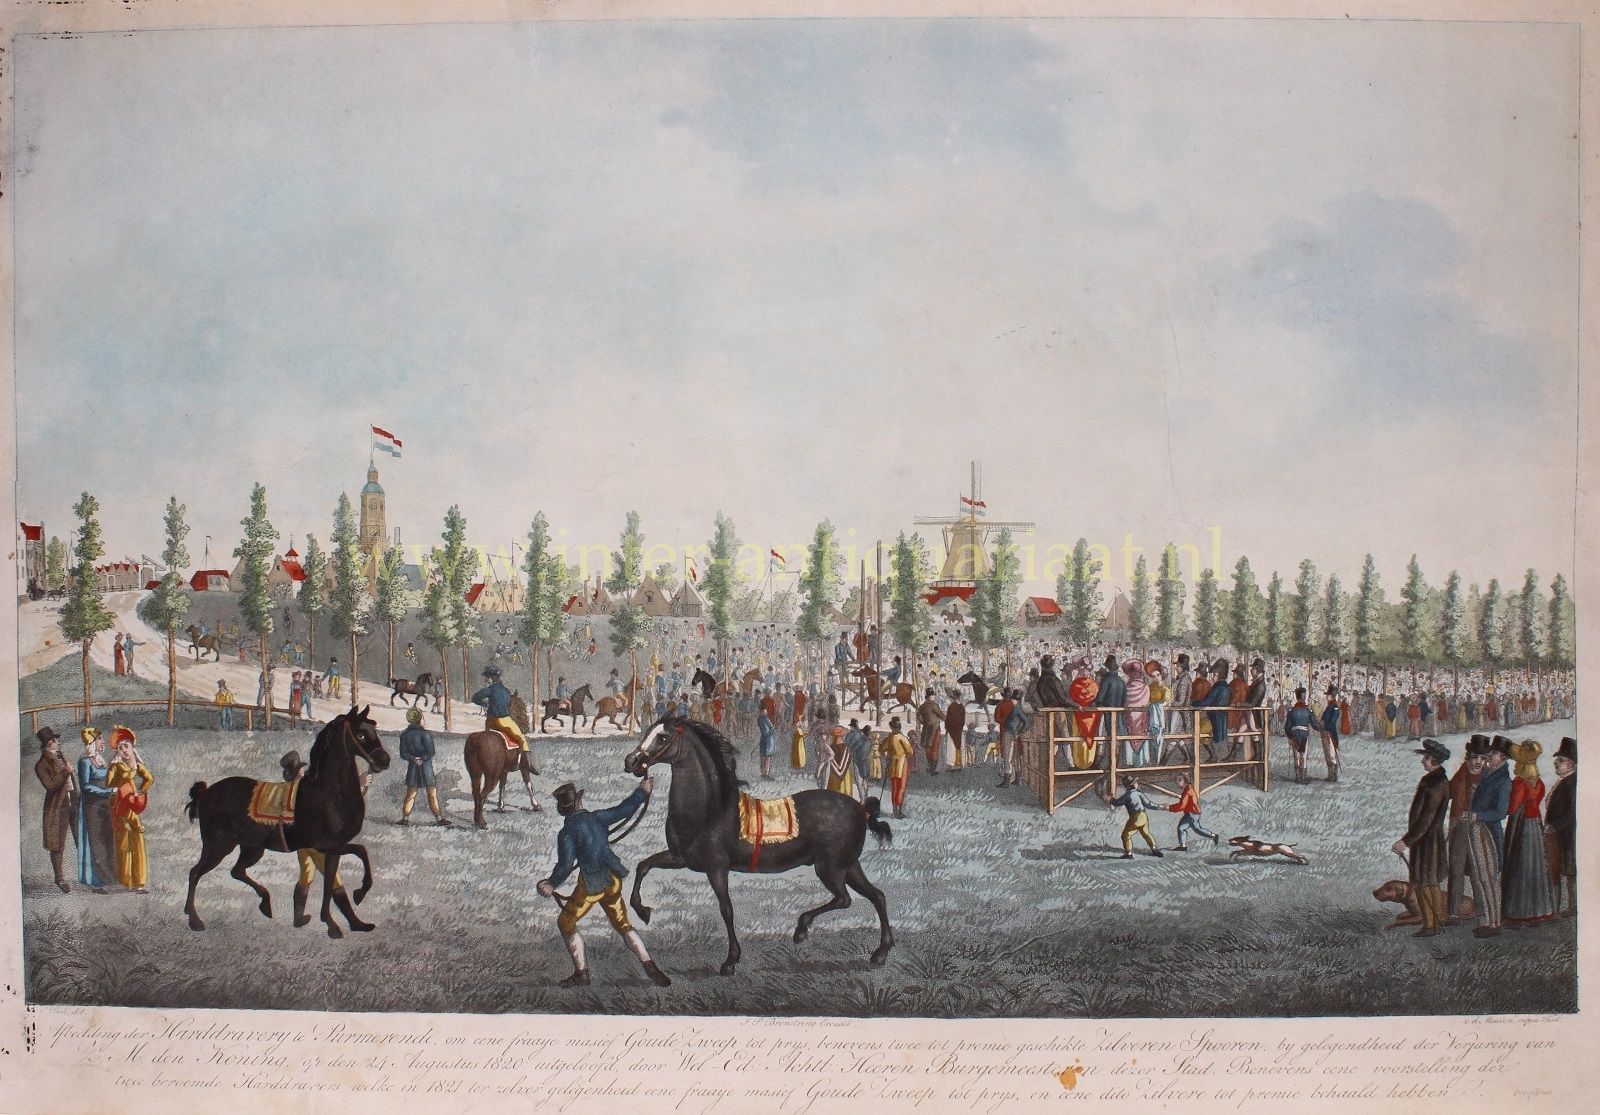 Bok-- Cornelis - Horse racing in Purmerend - Pieter van der Meulen after Cornelis Bok, 1821